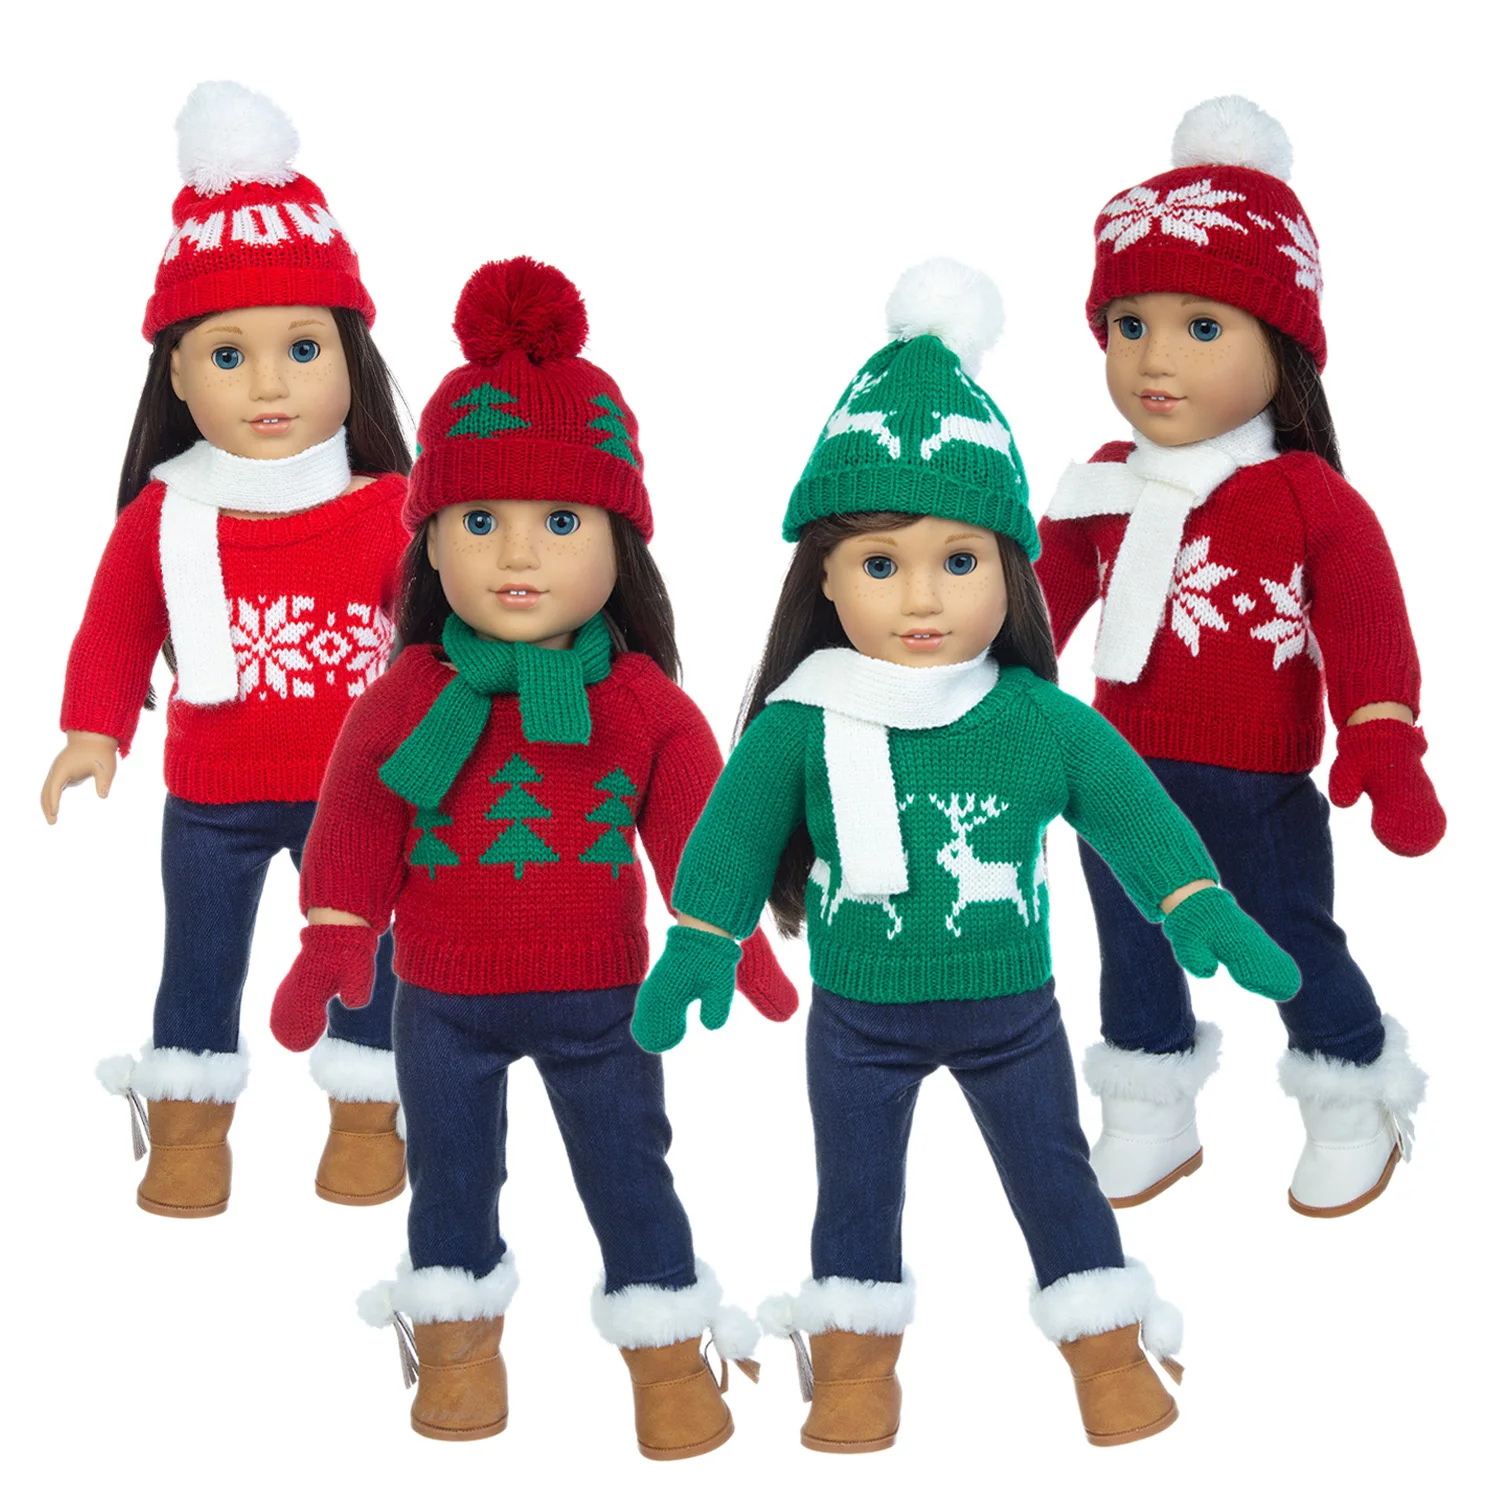 

2020 г., набор с милым рождественским свитером, подходит для кукол американской девочки, кукольная одежда 18 дюймов, обувь в комплект не входит.